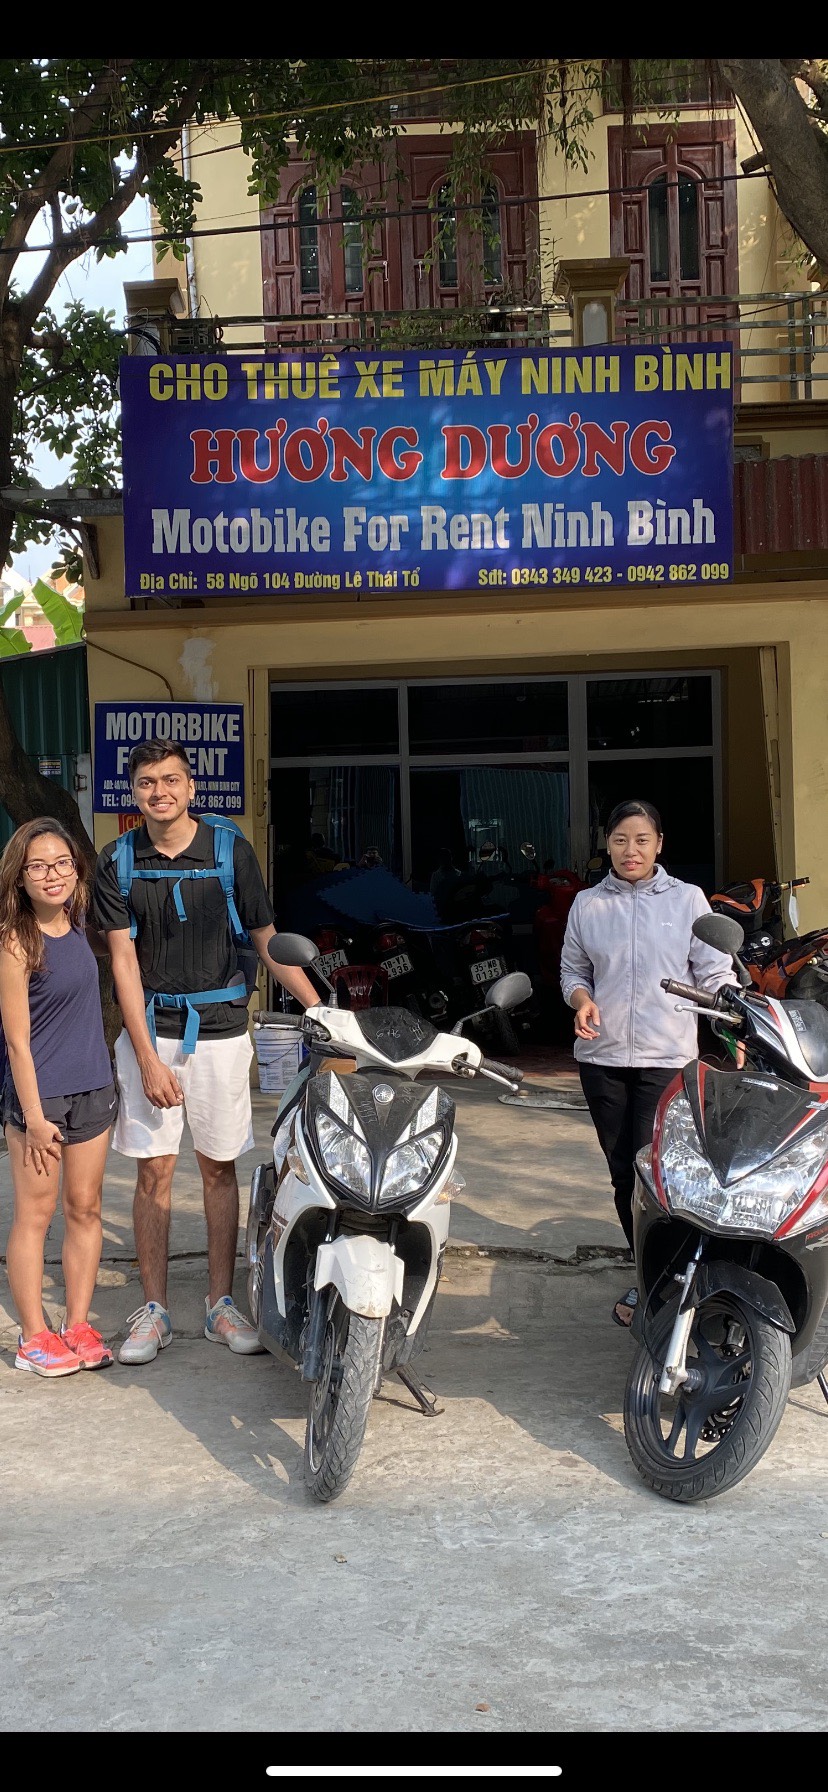 Dịch vụ cho thuê xe máy - Cho Thuê Xe Máy Ninh Bình